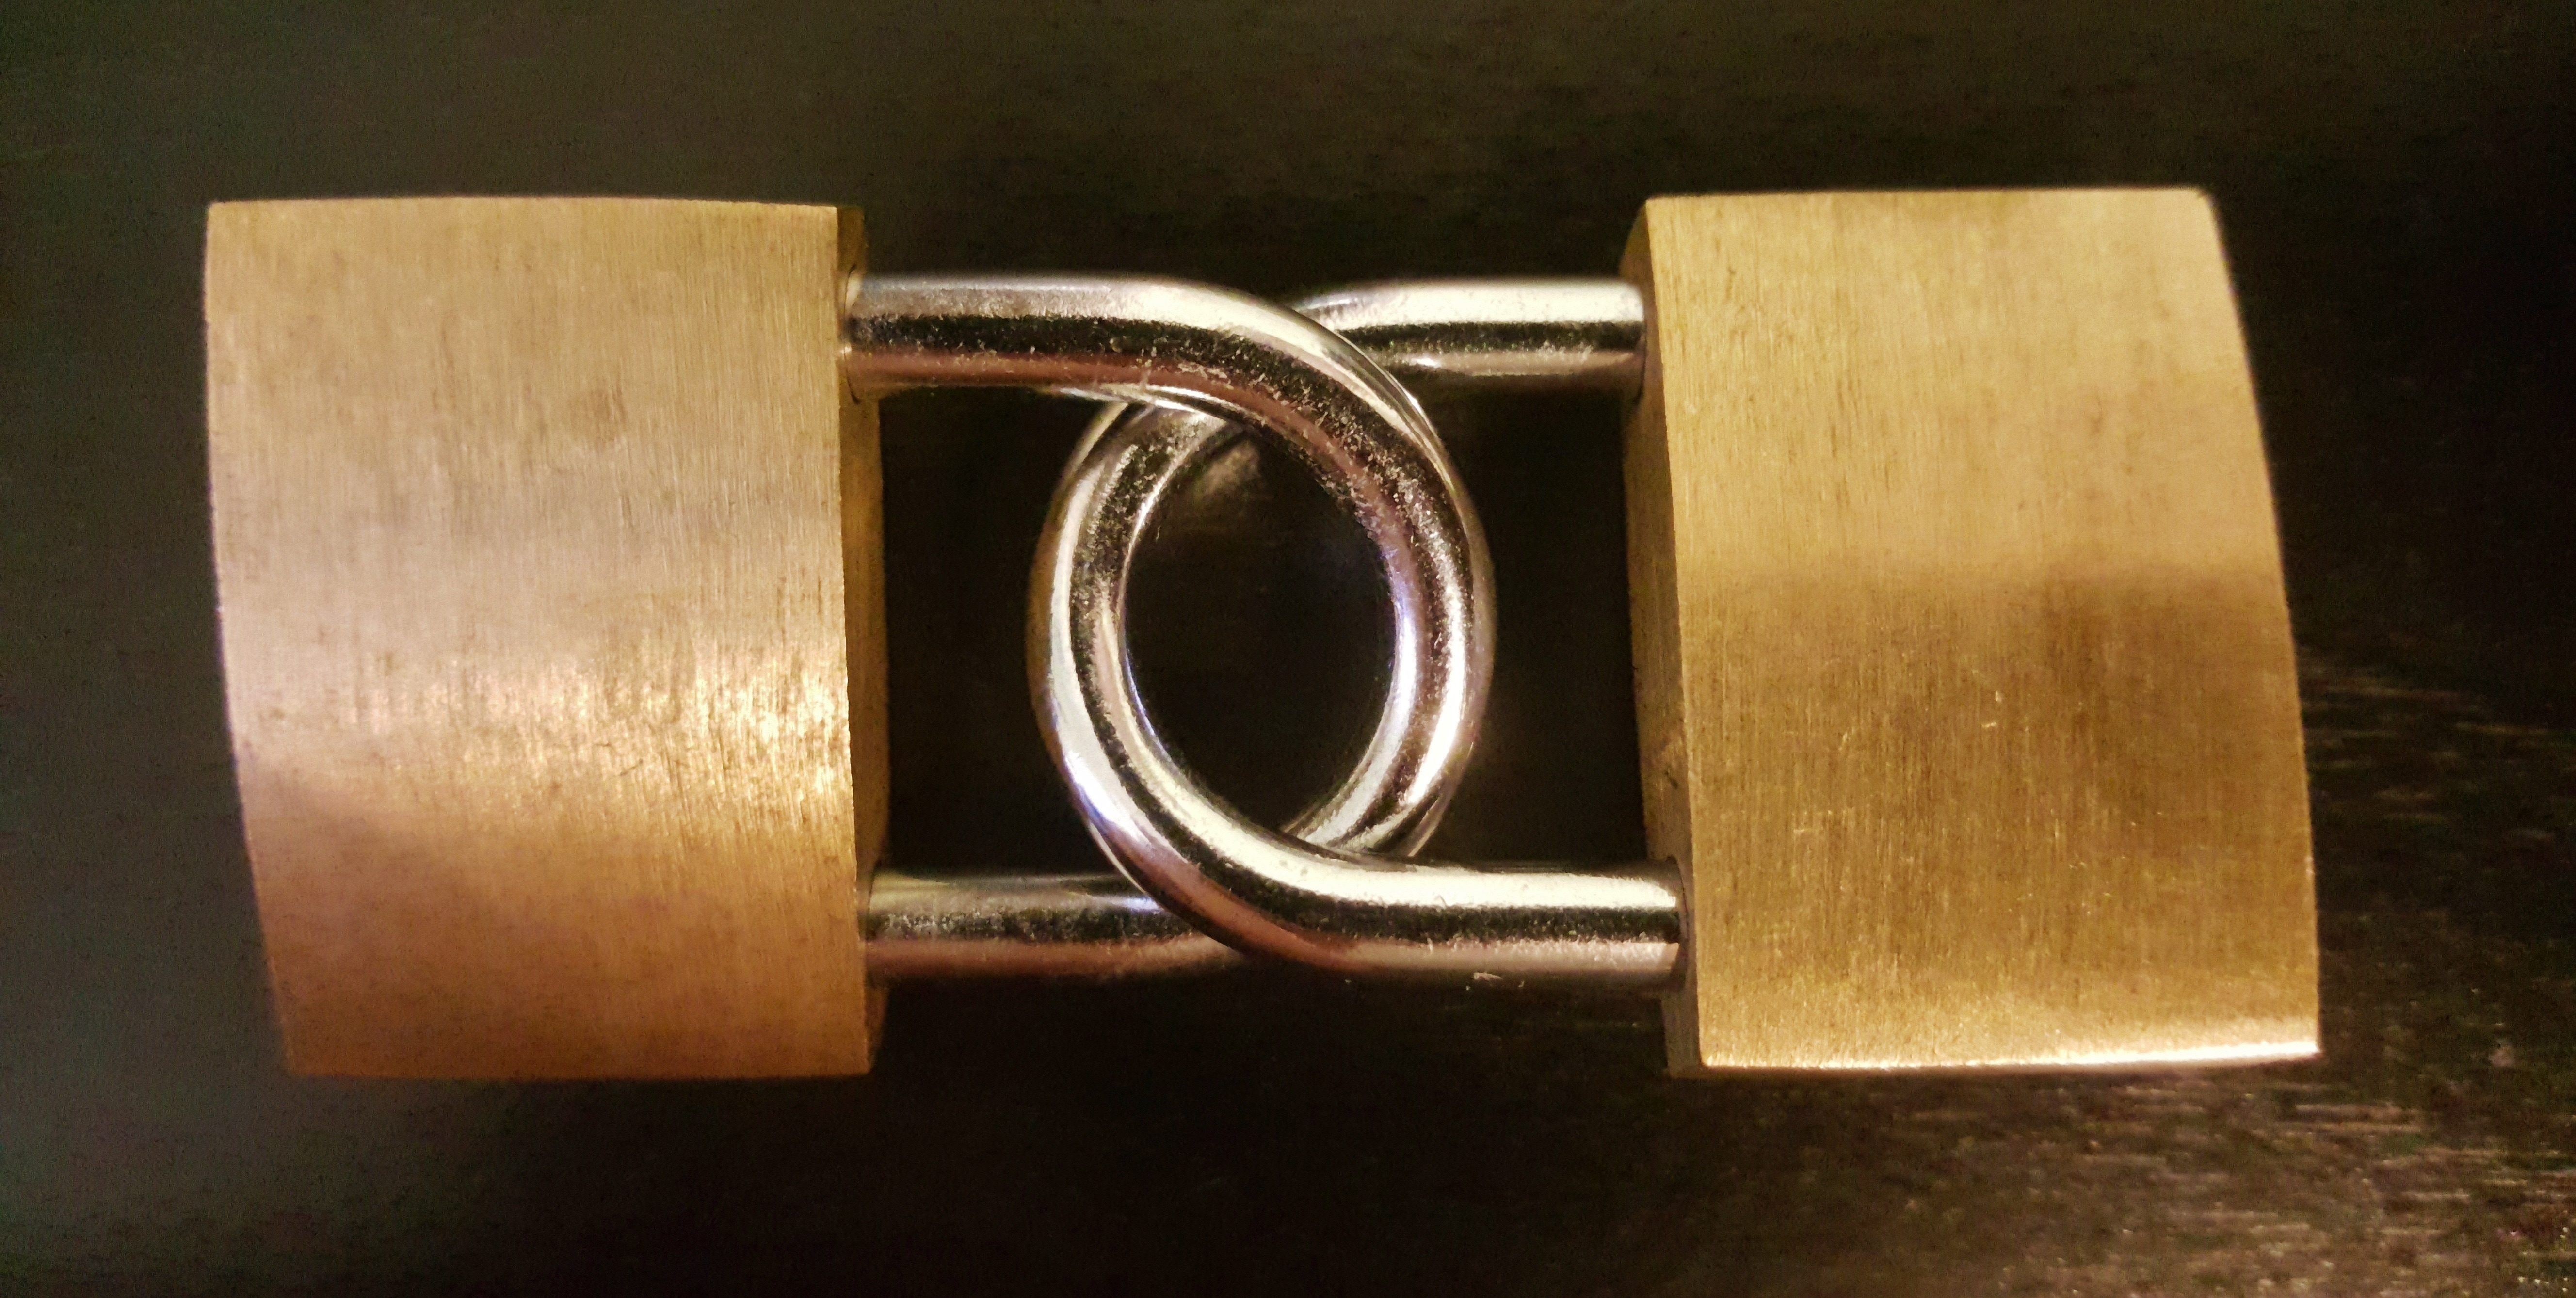 2 brass padlocks